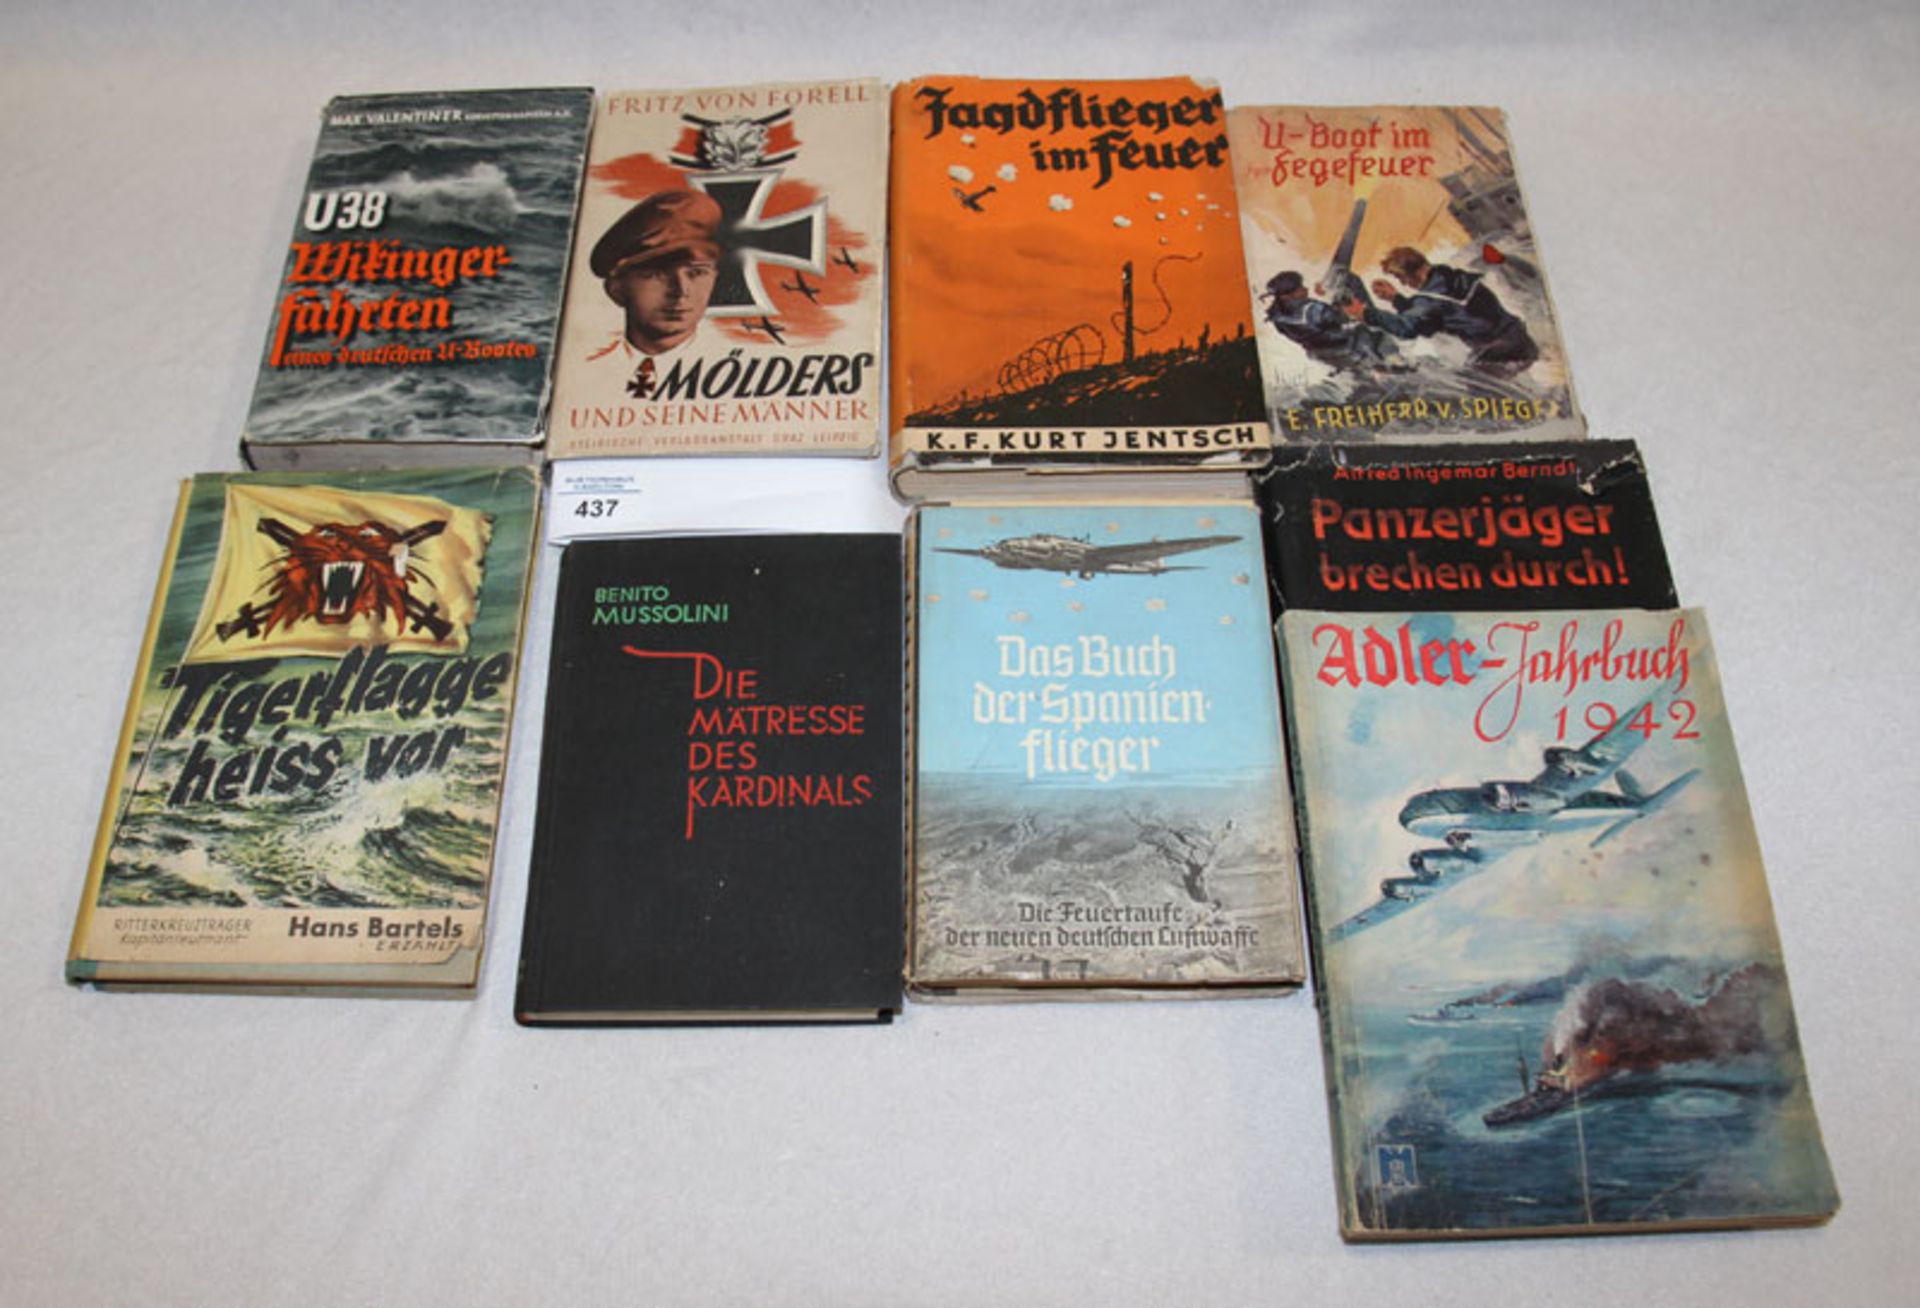 Bücher-Konvolut aus dem 3. Reich, u. a. U38 Wikinger-Fahrten eines deutschen U-Bootes, Mölders und